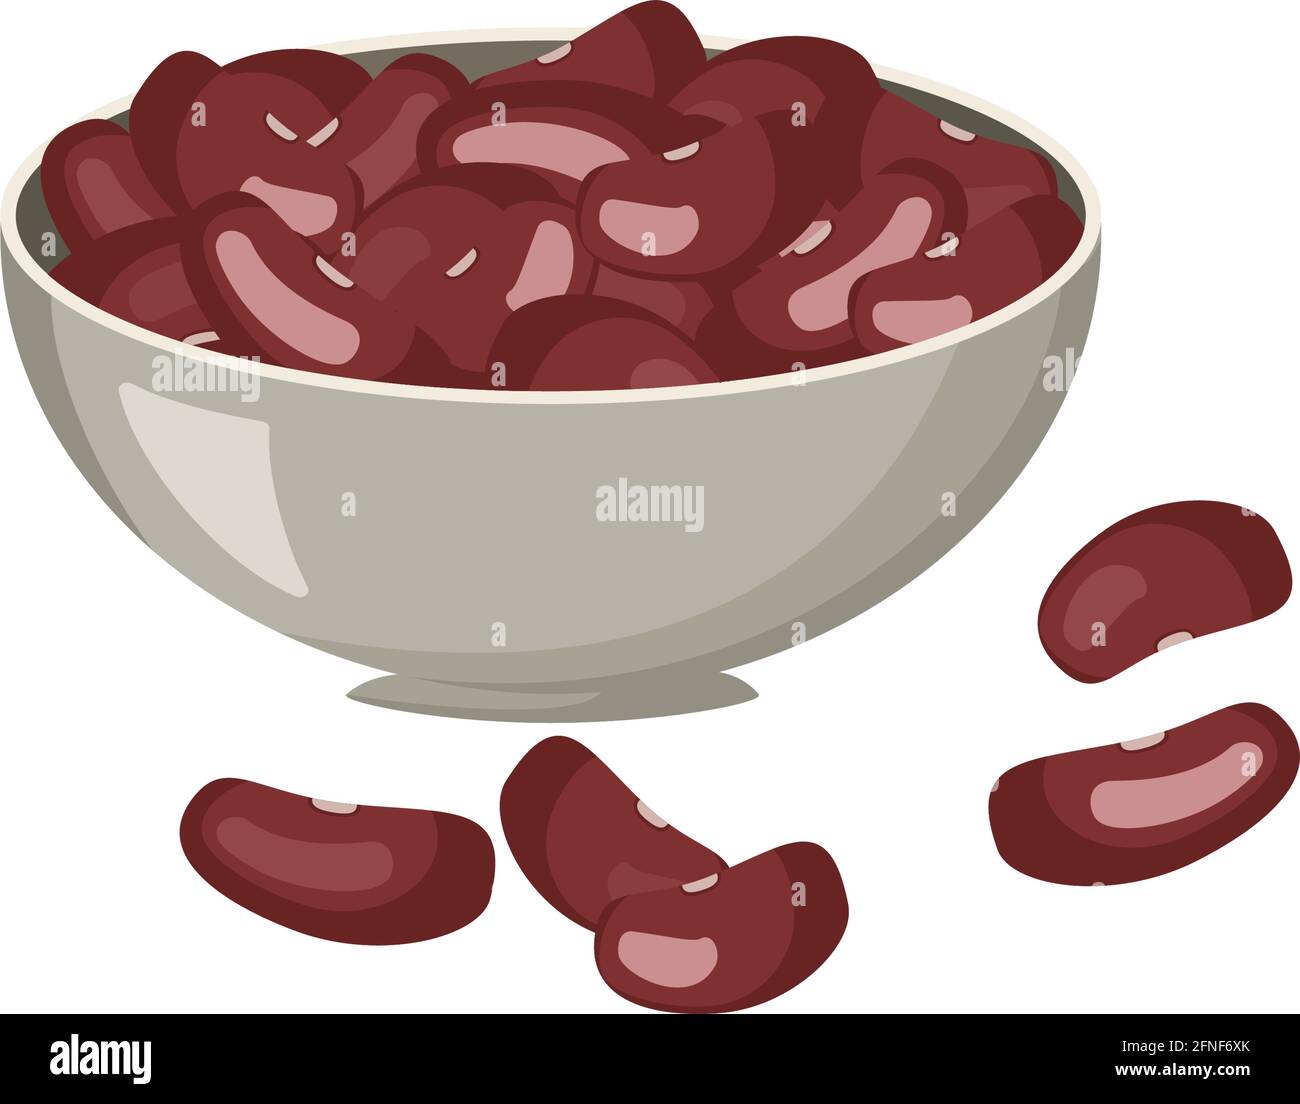 Fagioli rossi in un recipiente di metallo. Una fonte di vitamine, calcio, proteine. Fagioli renali Illustrazione Vettoriale